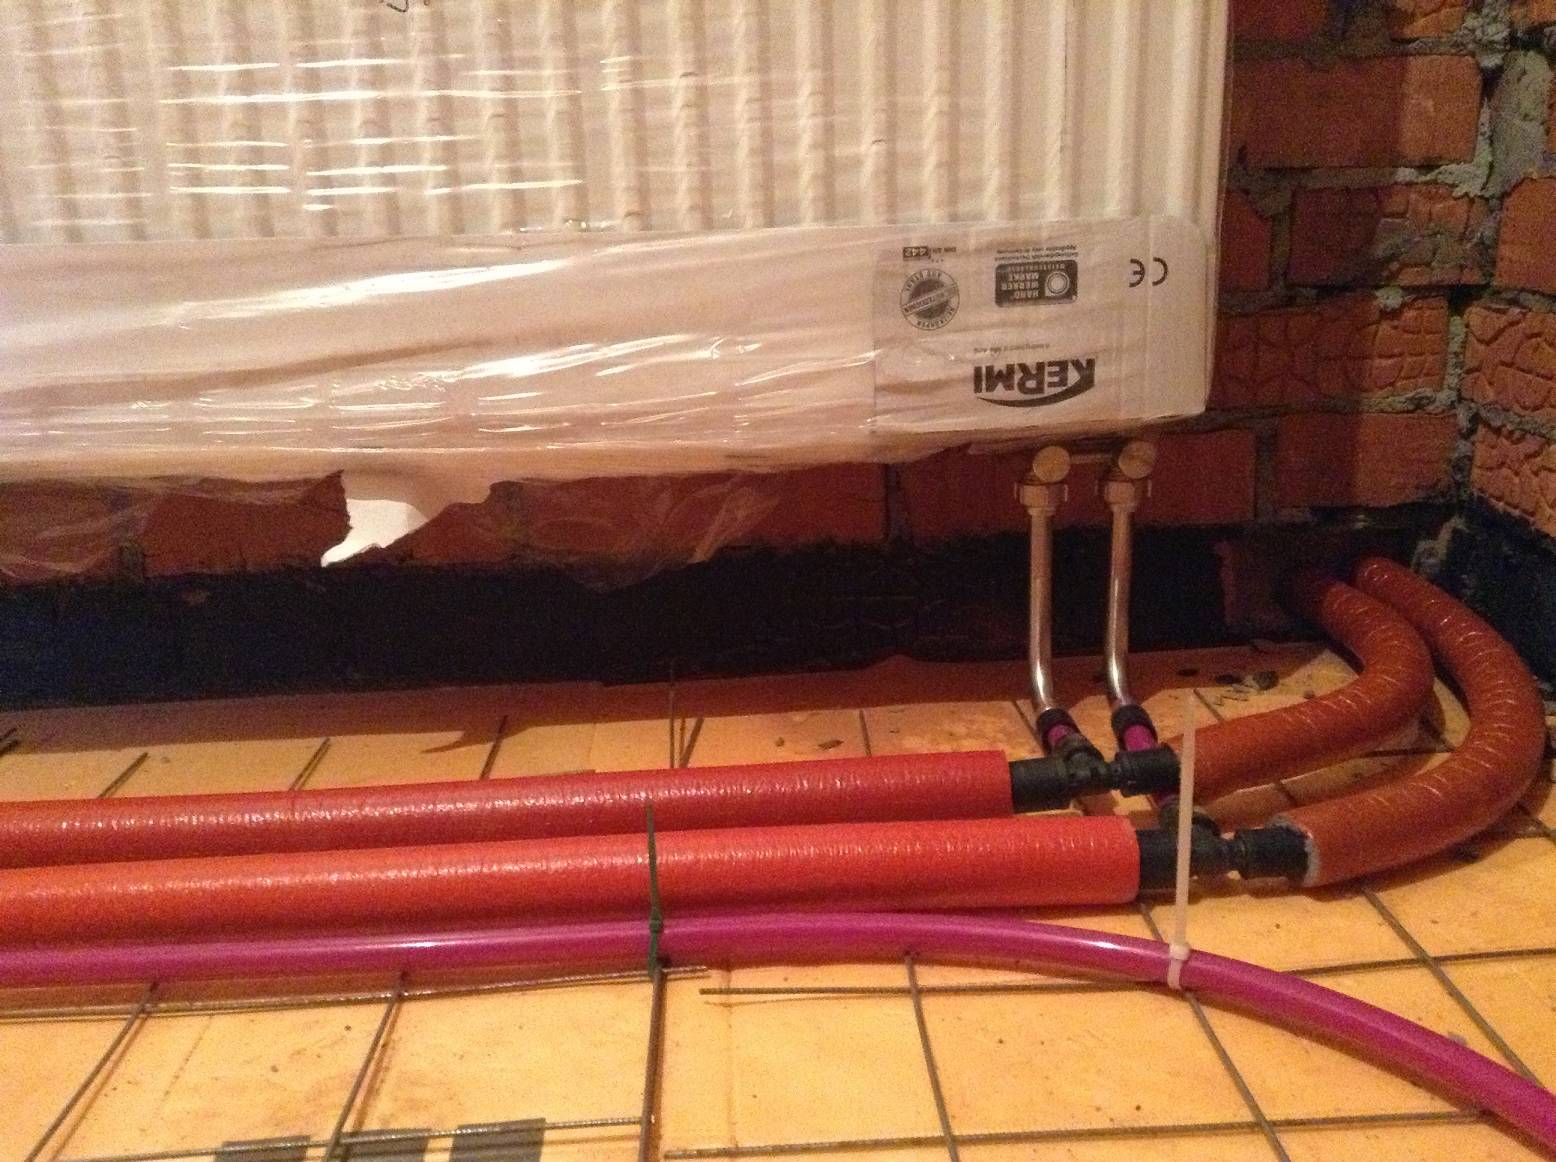 Сшитый полиэтилен для отопления: подключение радиаторов в жилом доме трубами упонор и рехау, диаметр, монтаж системы фитингами